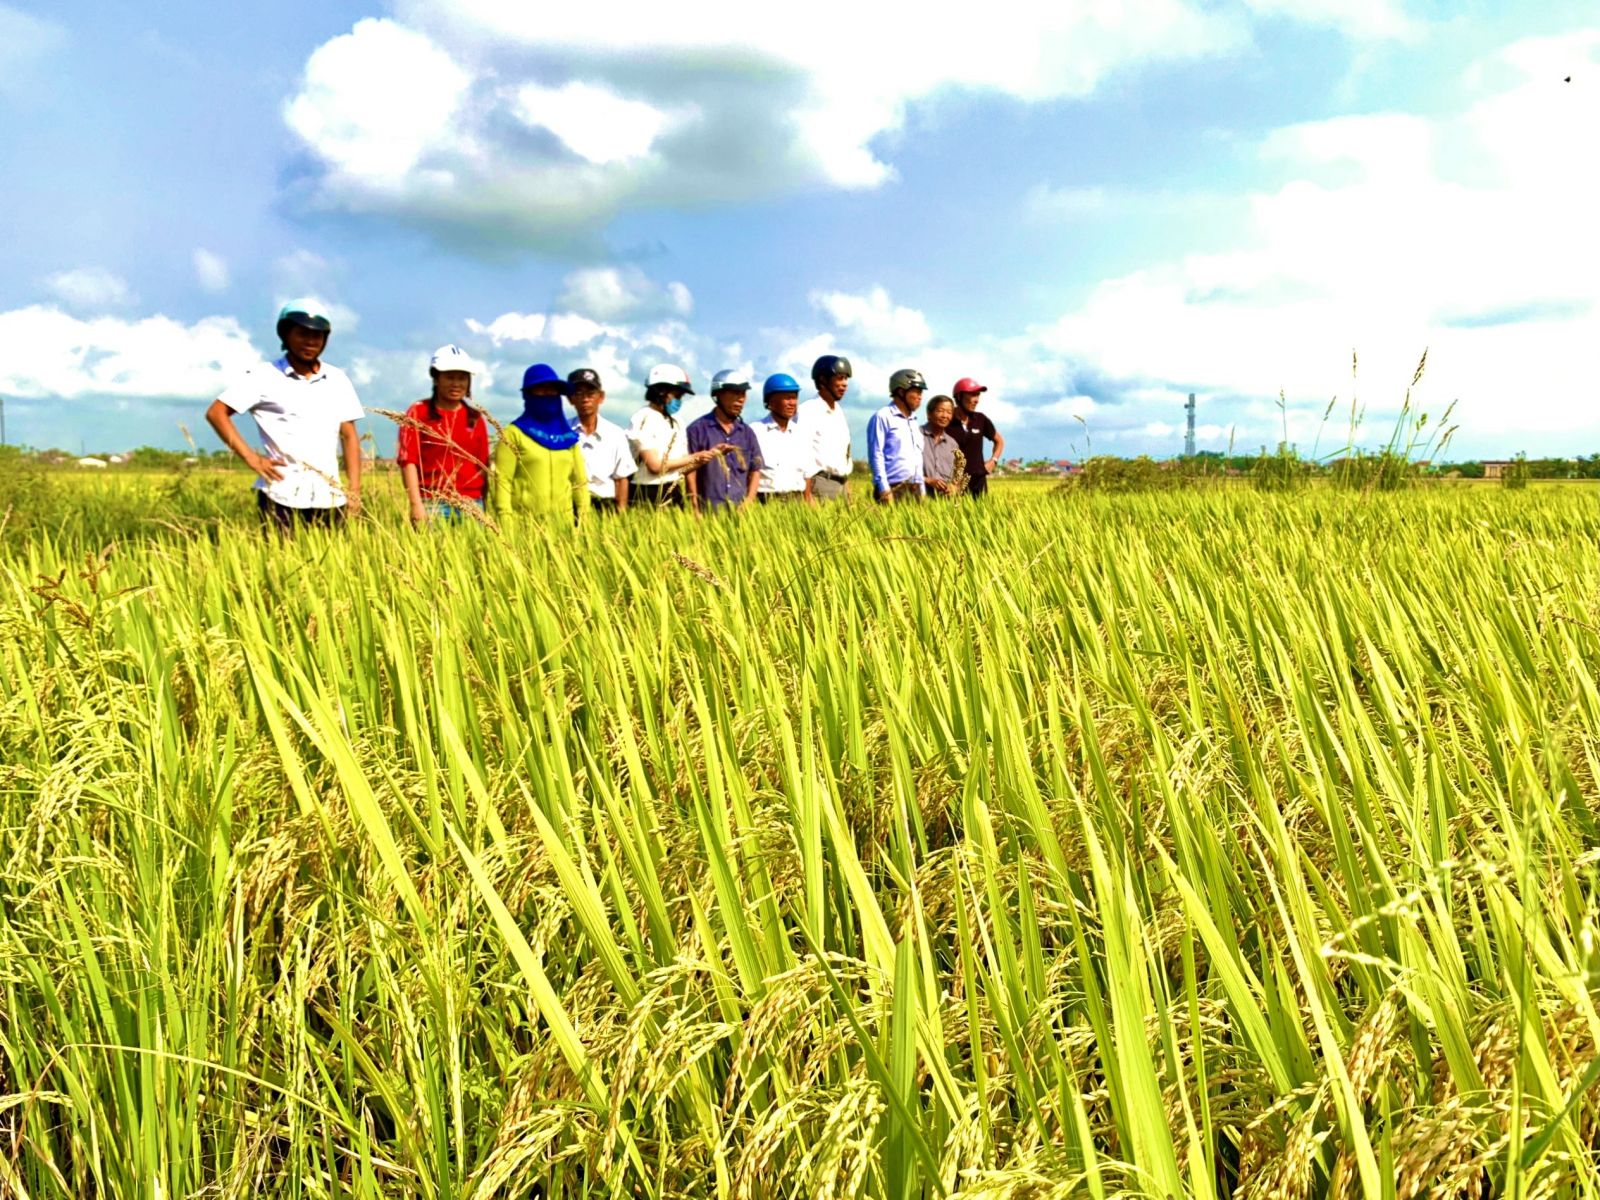 Cánh đồng mẫu sản xuất lúa hướng đi mới cho cây lúa ở Thừa Thiên Huế